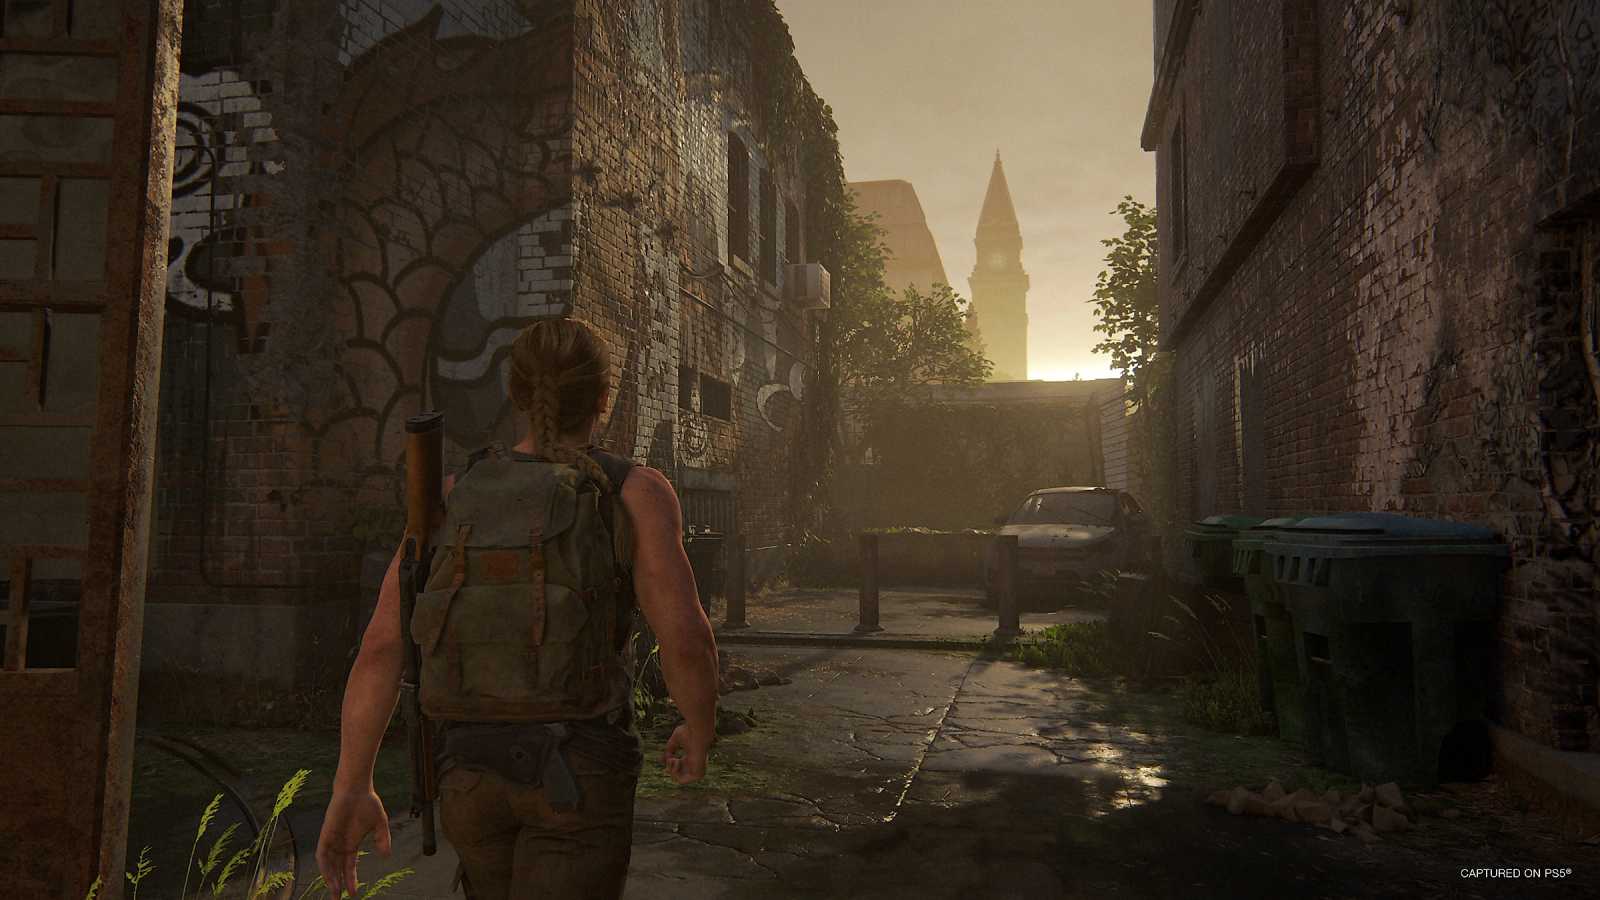 Recenze The Last of Us Part II Remastered, aneb když naději vystřídá bezbřehá touha po pomstě